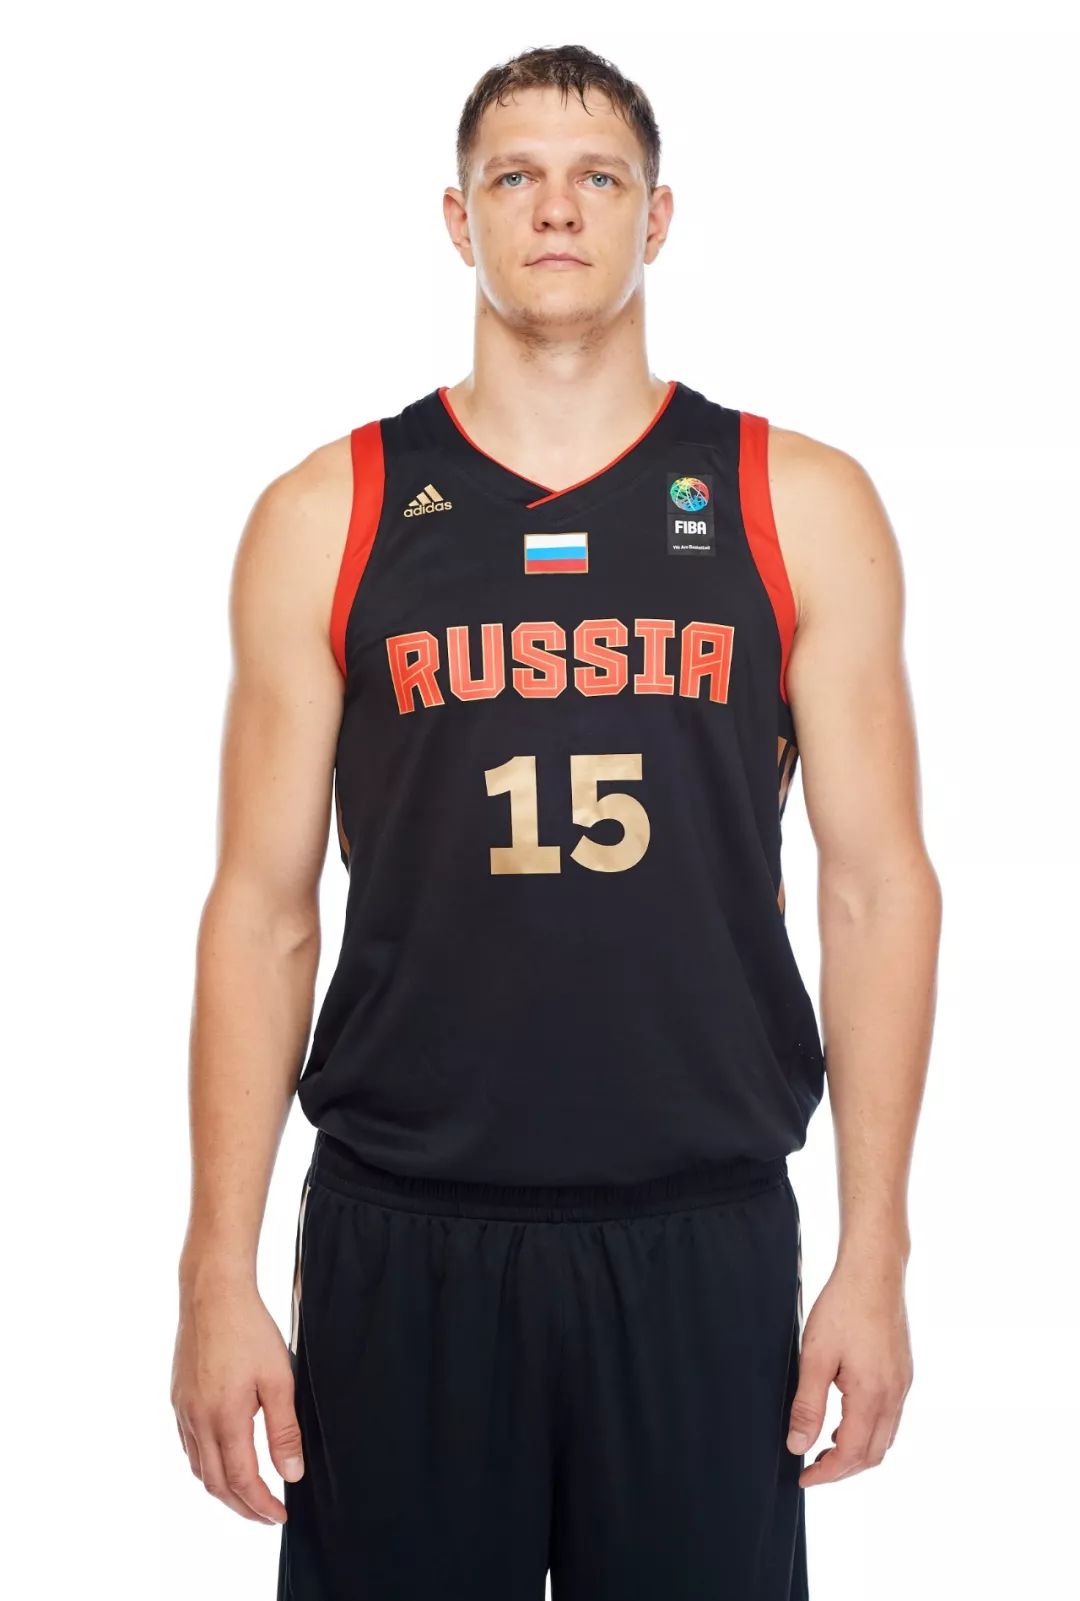 俄罗斯篮球运动员图片